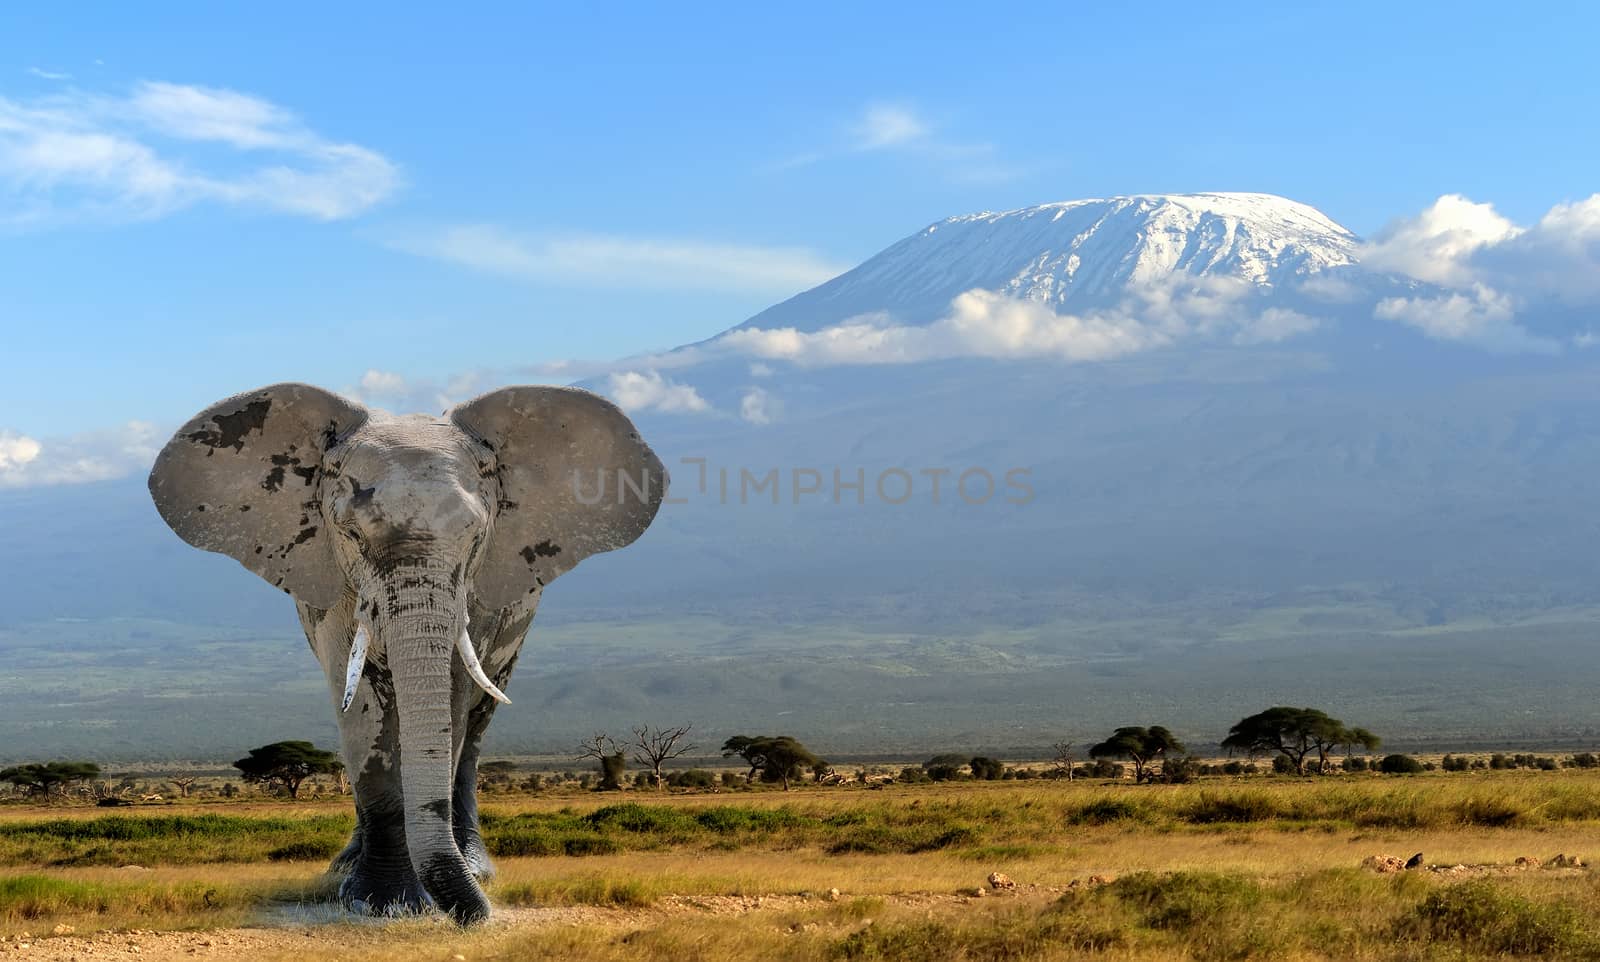 Elephant on Kilimanjaro mountain background. National Park of Kenya, Africa